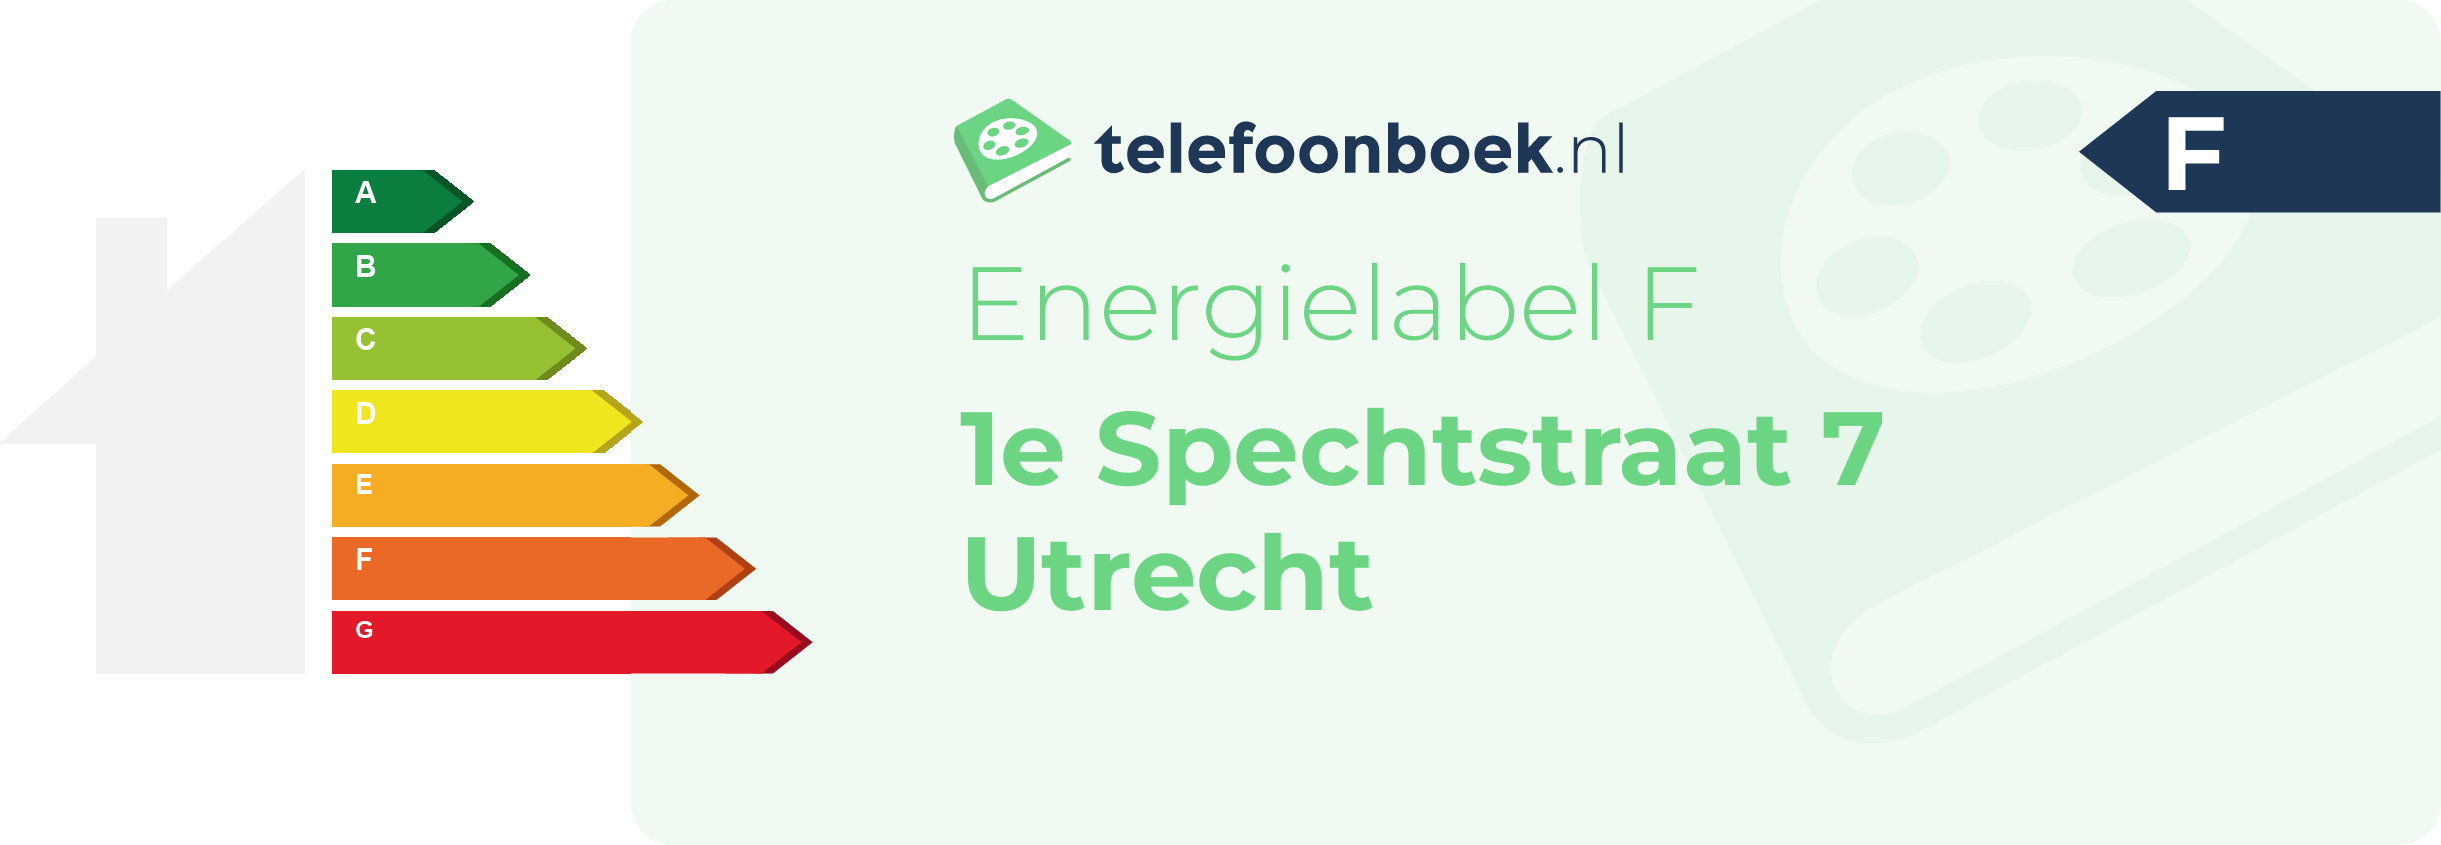 Energielabel 1e Spechtstraat 7 Utrecht